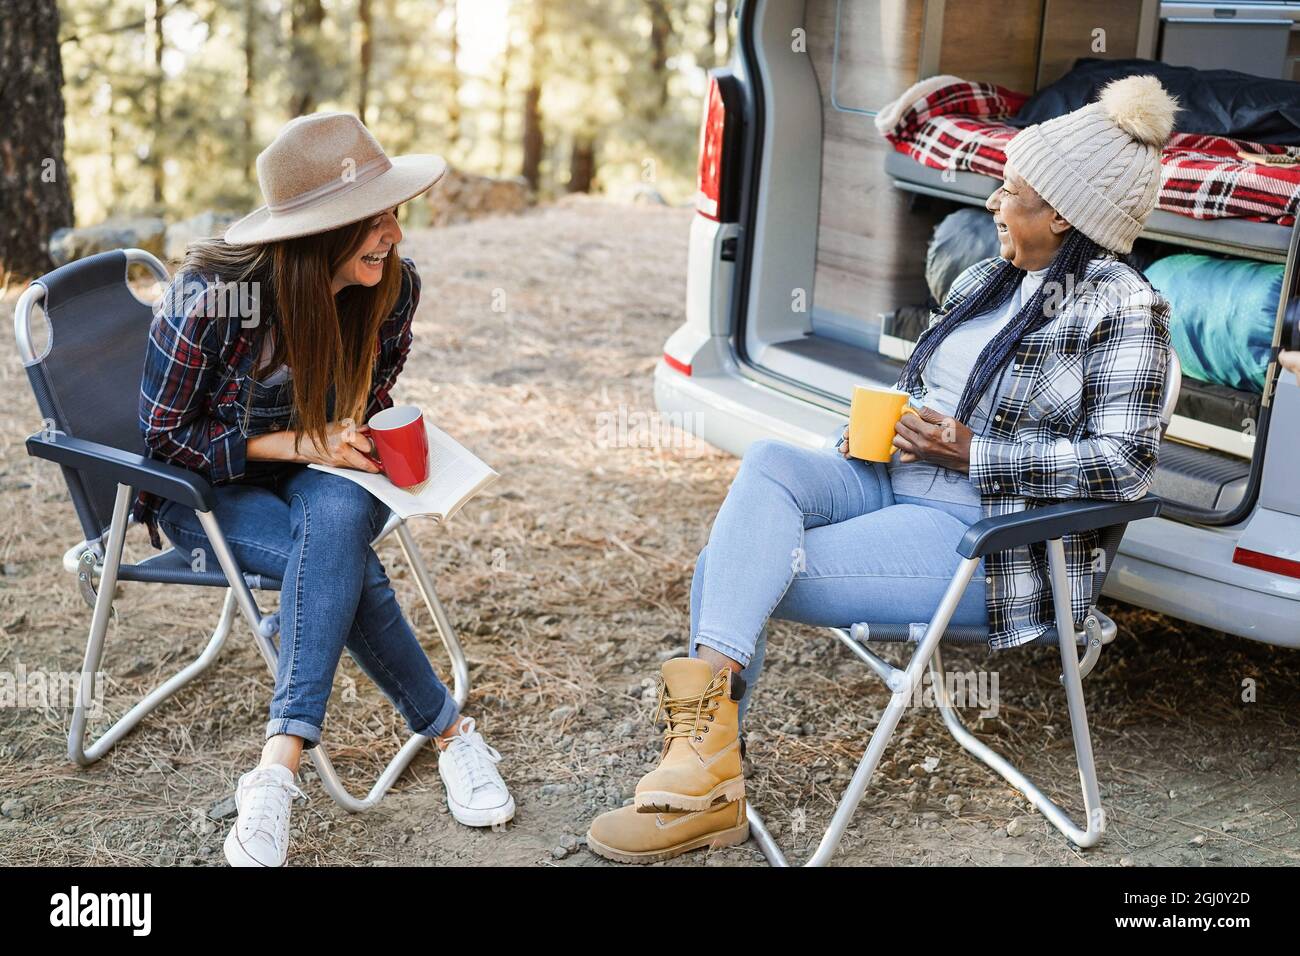 Multirassische Freundinnen, die Spaß beim Campen mit dem Wohnmobil haben, während sie Kaffee im Freien trinken - Fokus auf ältere afrikanische Frau Gesicht Stockfoto